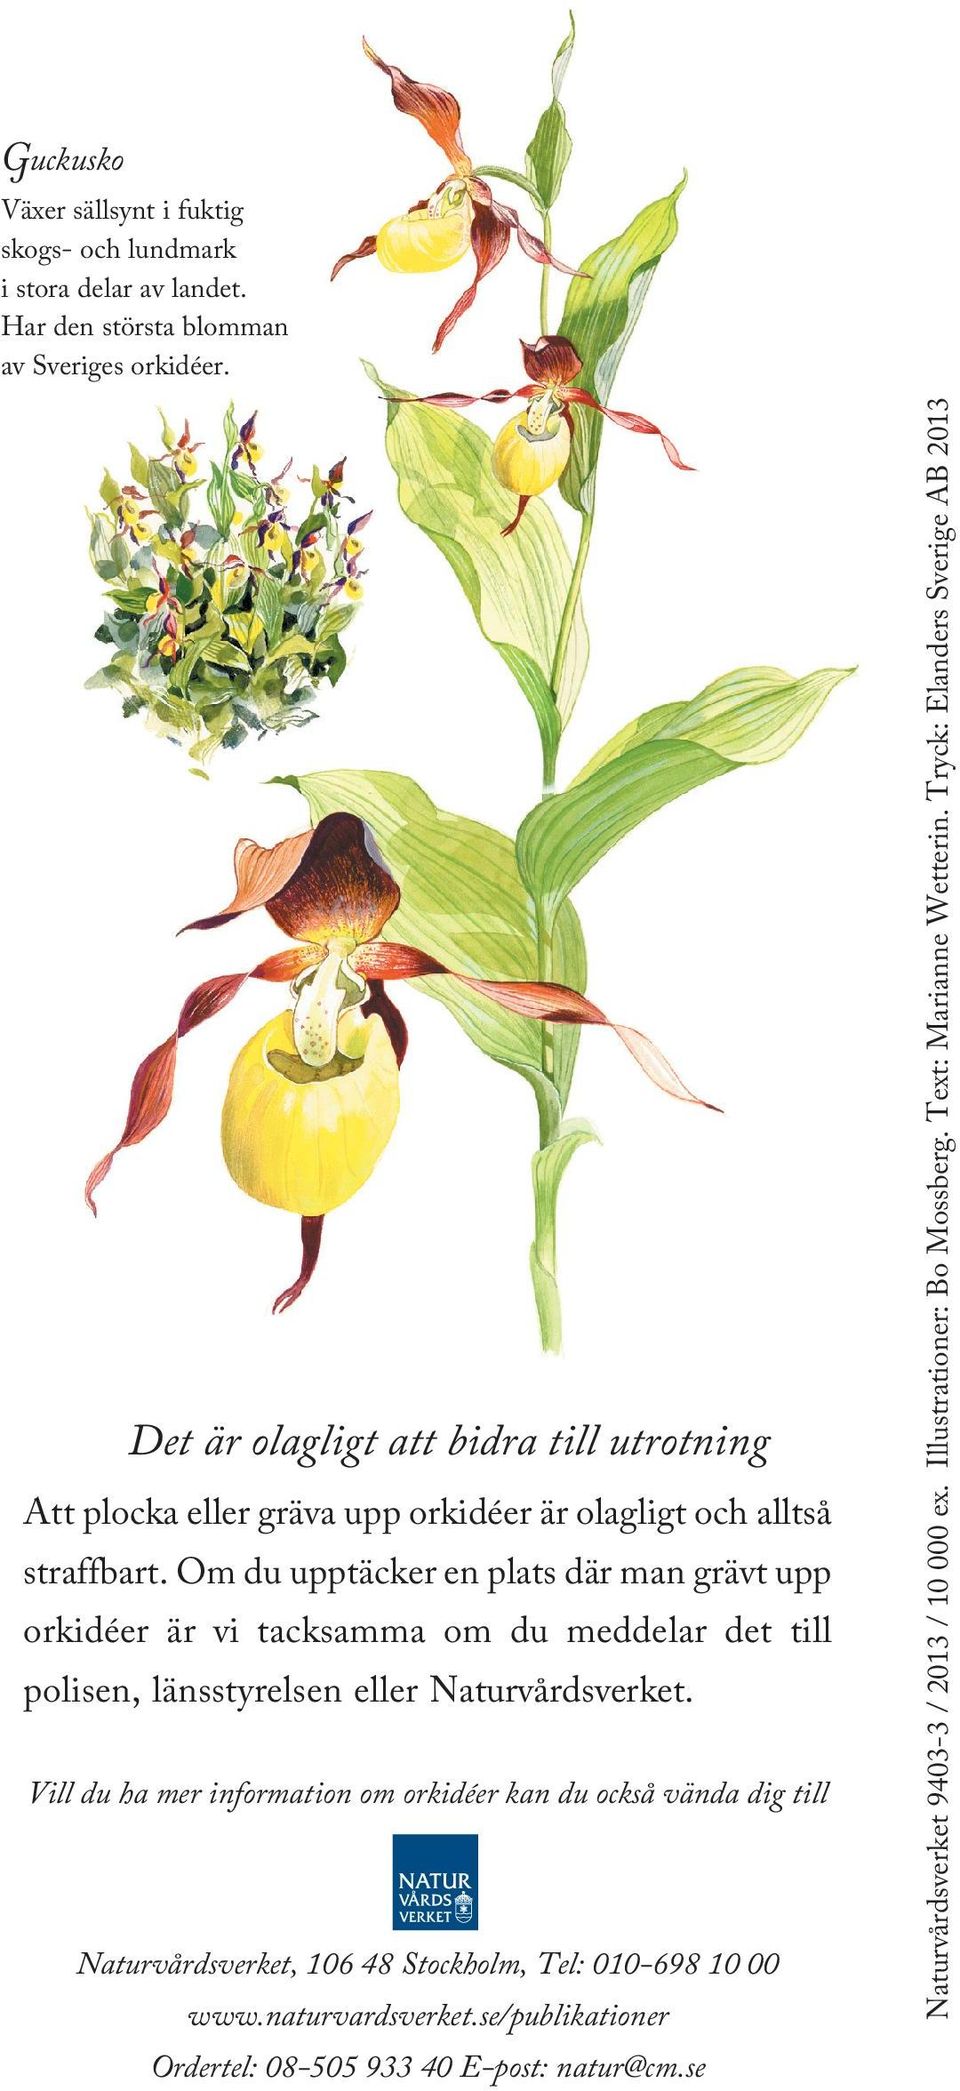 Väldoftande och sällsynt orkidé som växer på ängsmark i kalktrakter i nordvästra Sverige. Kärrknipprot Förekommer sällsynt i kalkkärr och på fuktängar. Är mer vanlig på Öland och Gotland.